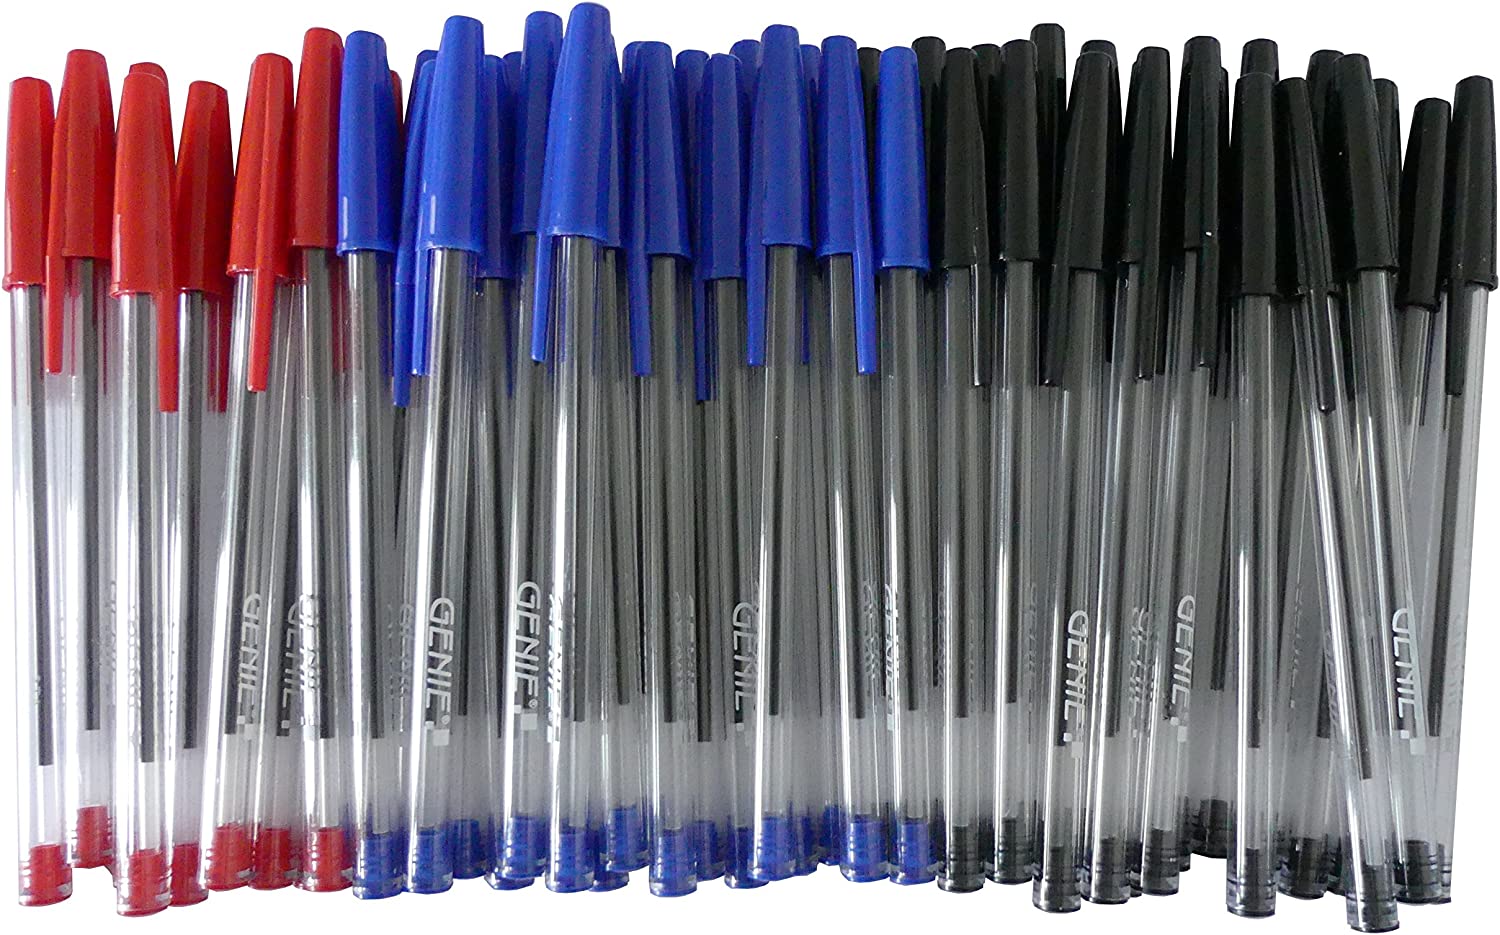 50 x Genie Kugelschreiber Farbig Sortiert Rot/Blau/Schwarz